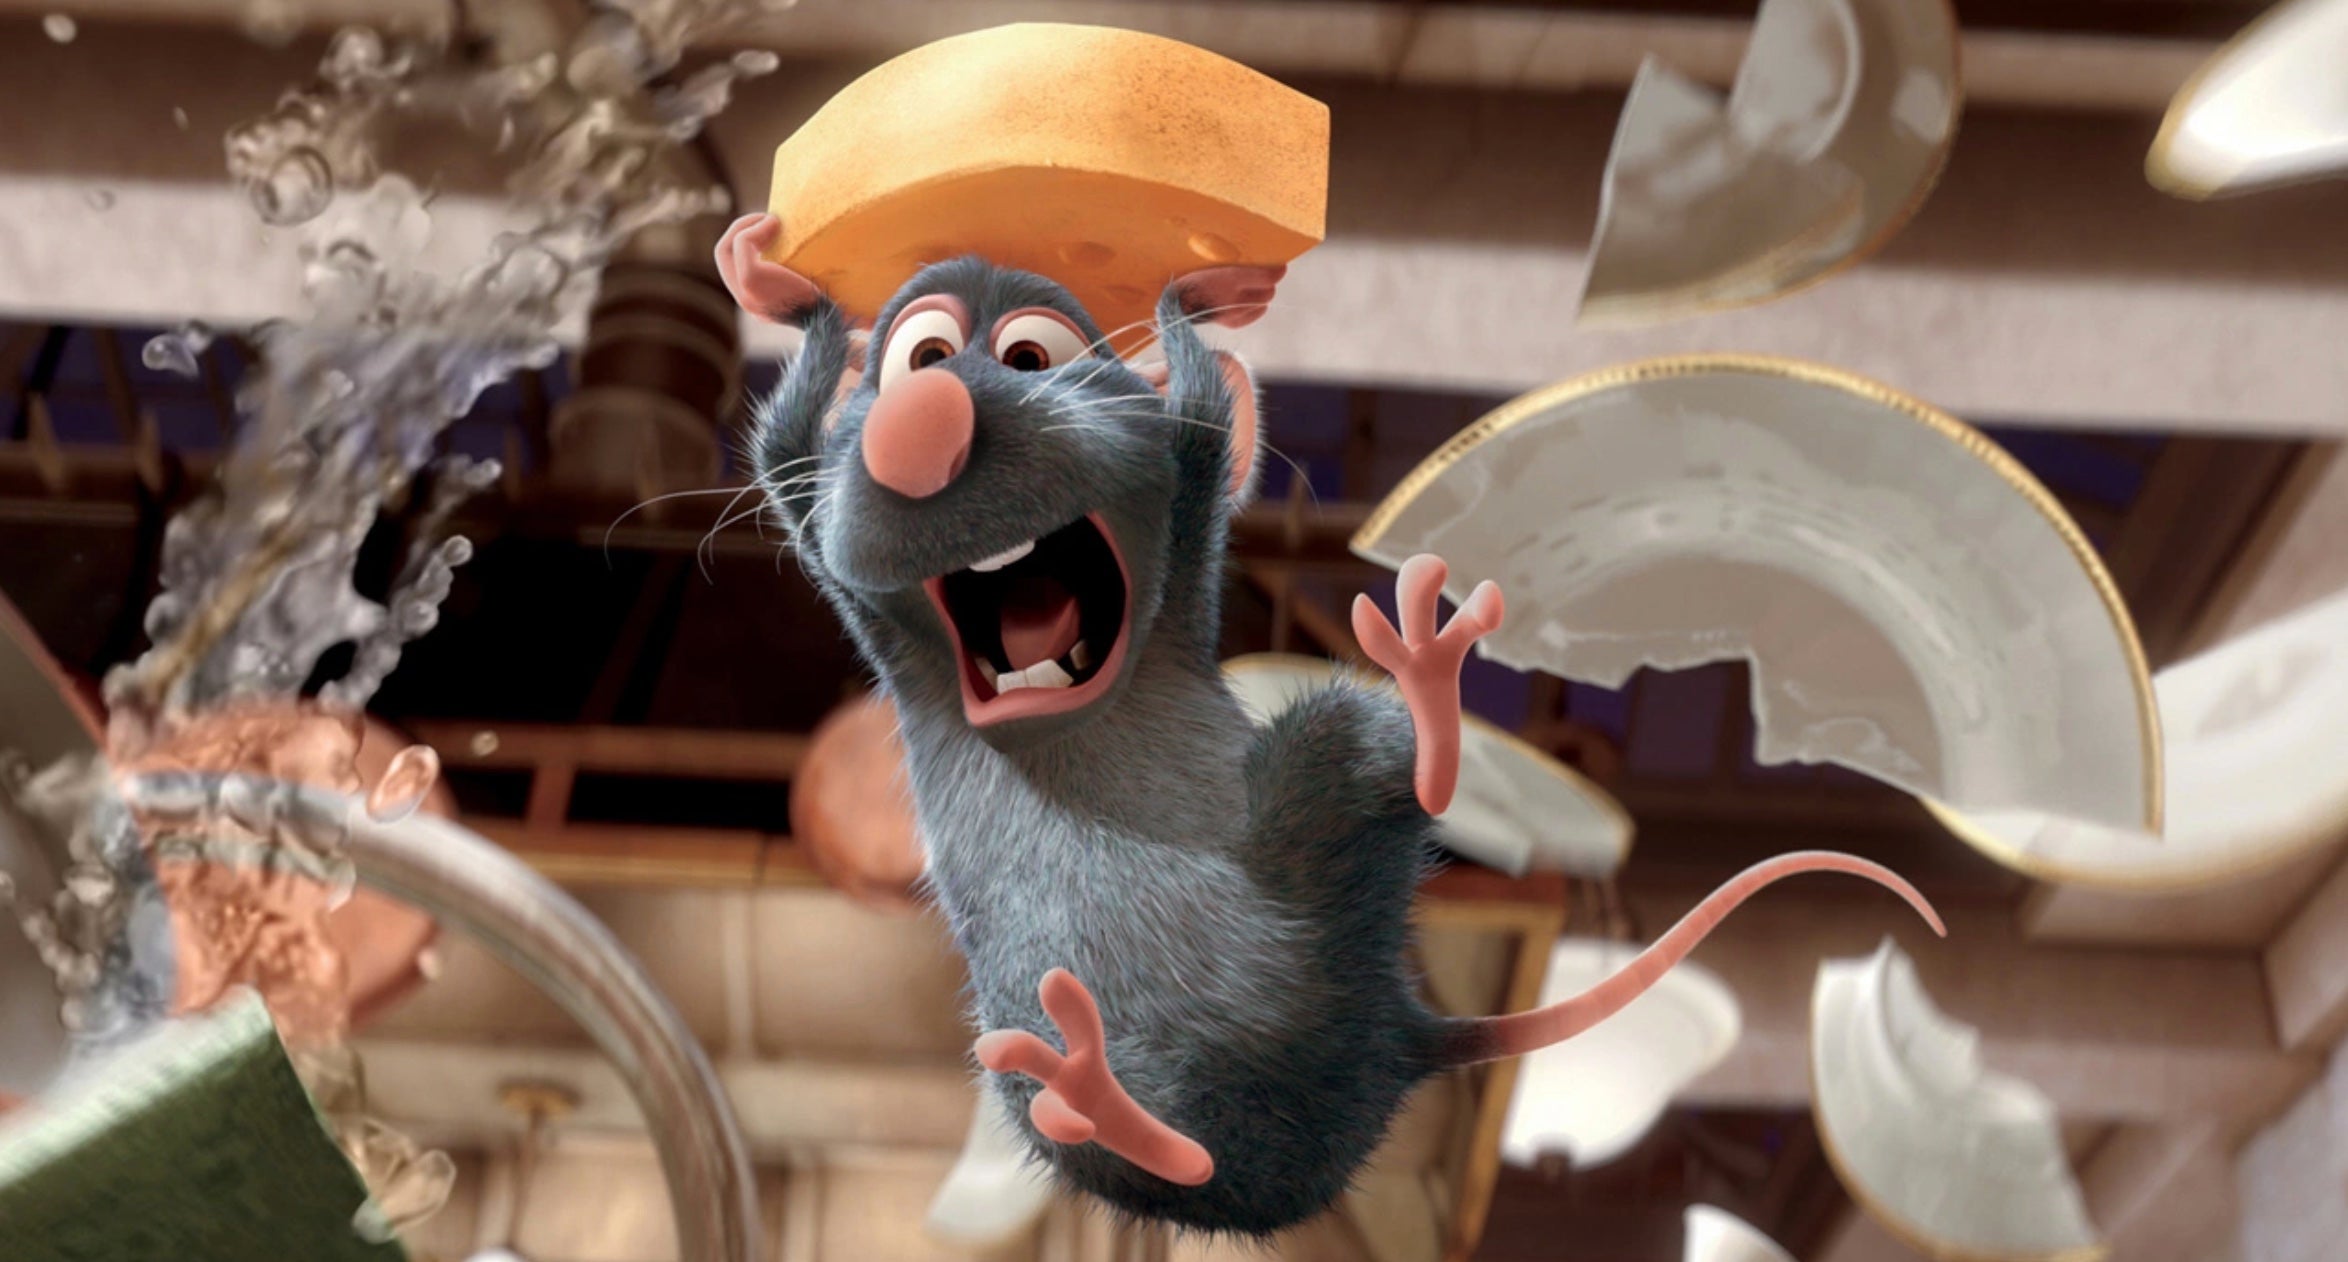 Remy in Ratatouille. (Image: Pixar)